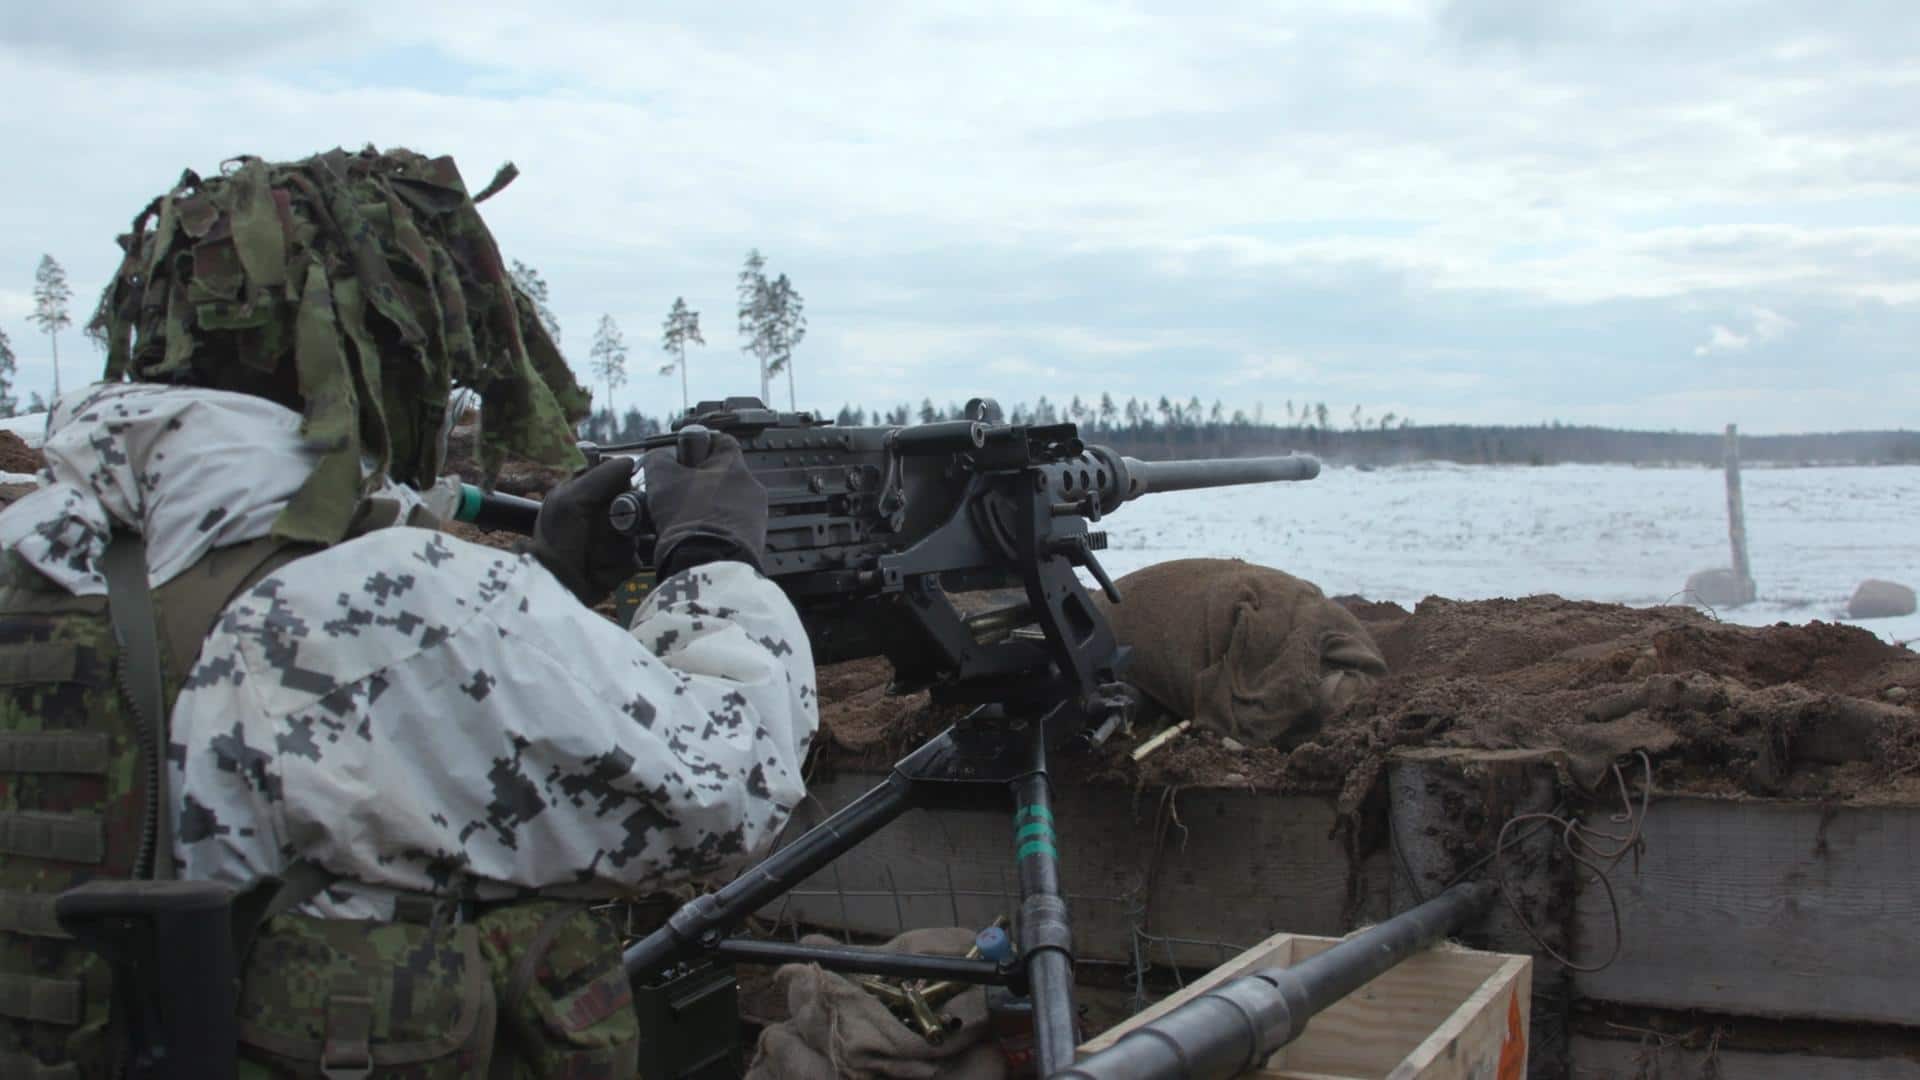 Reportage in Estonia - Il Paese si arma